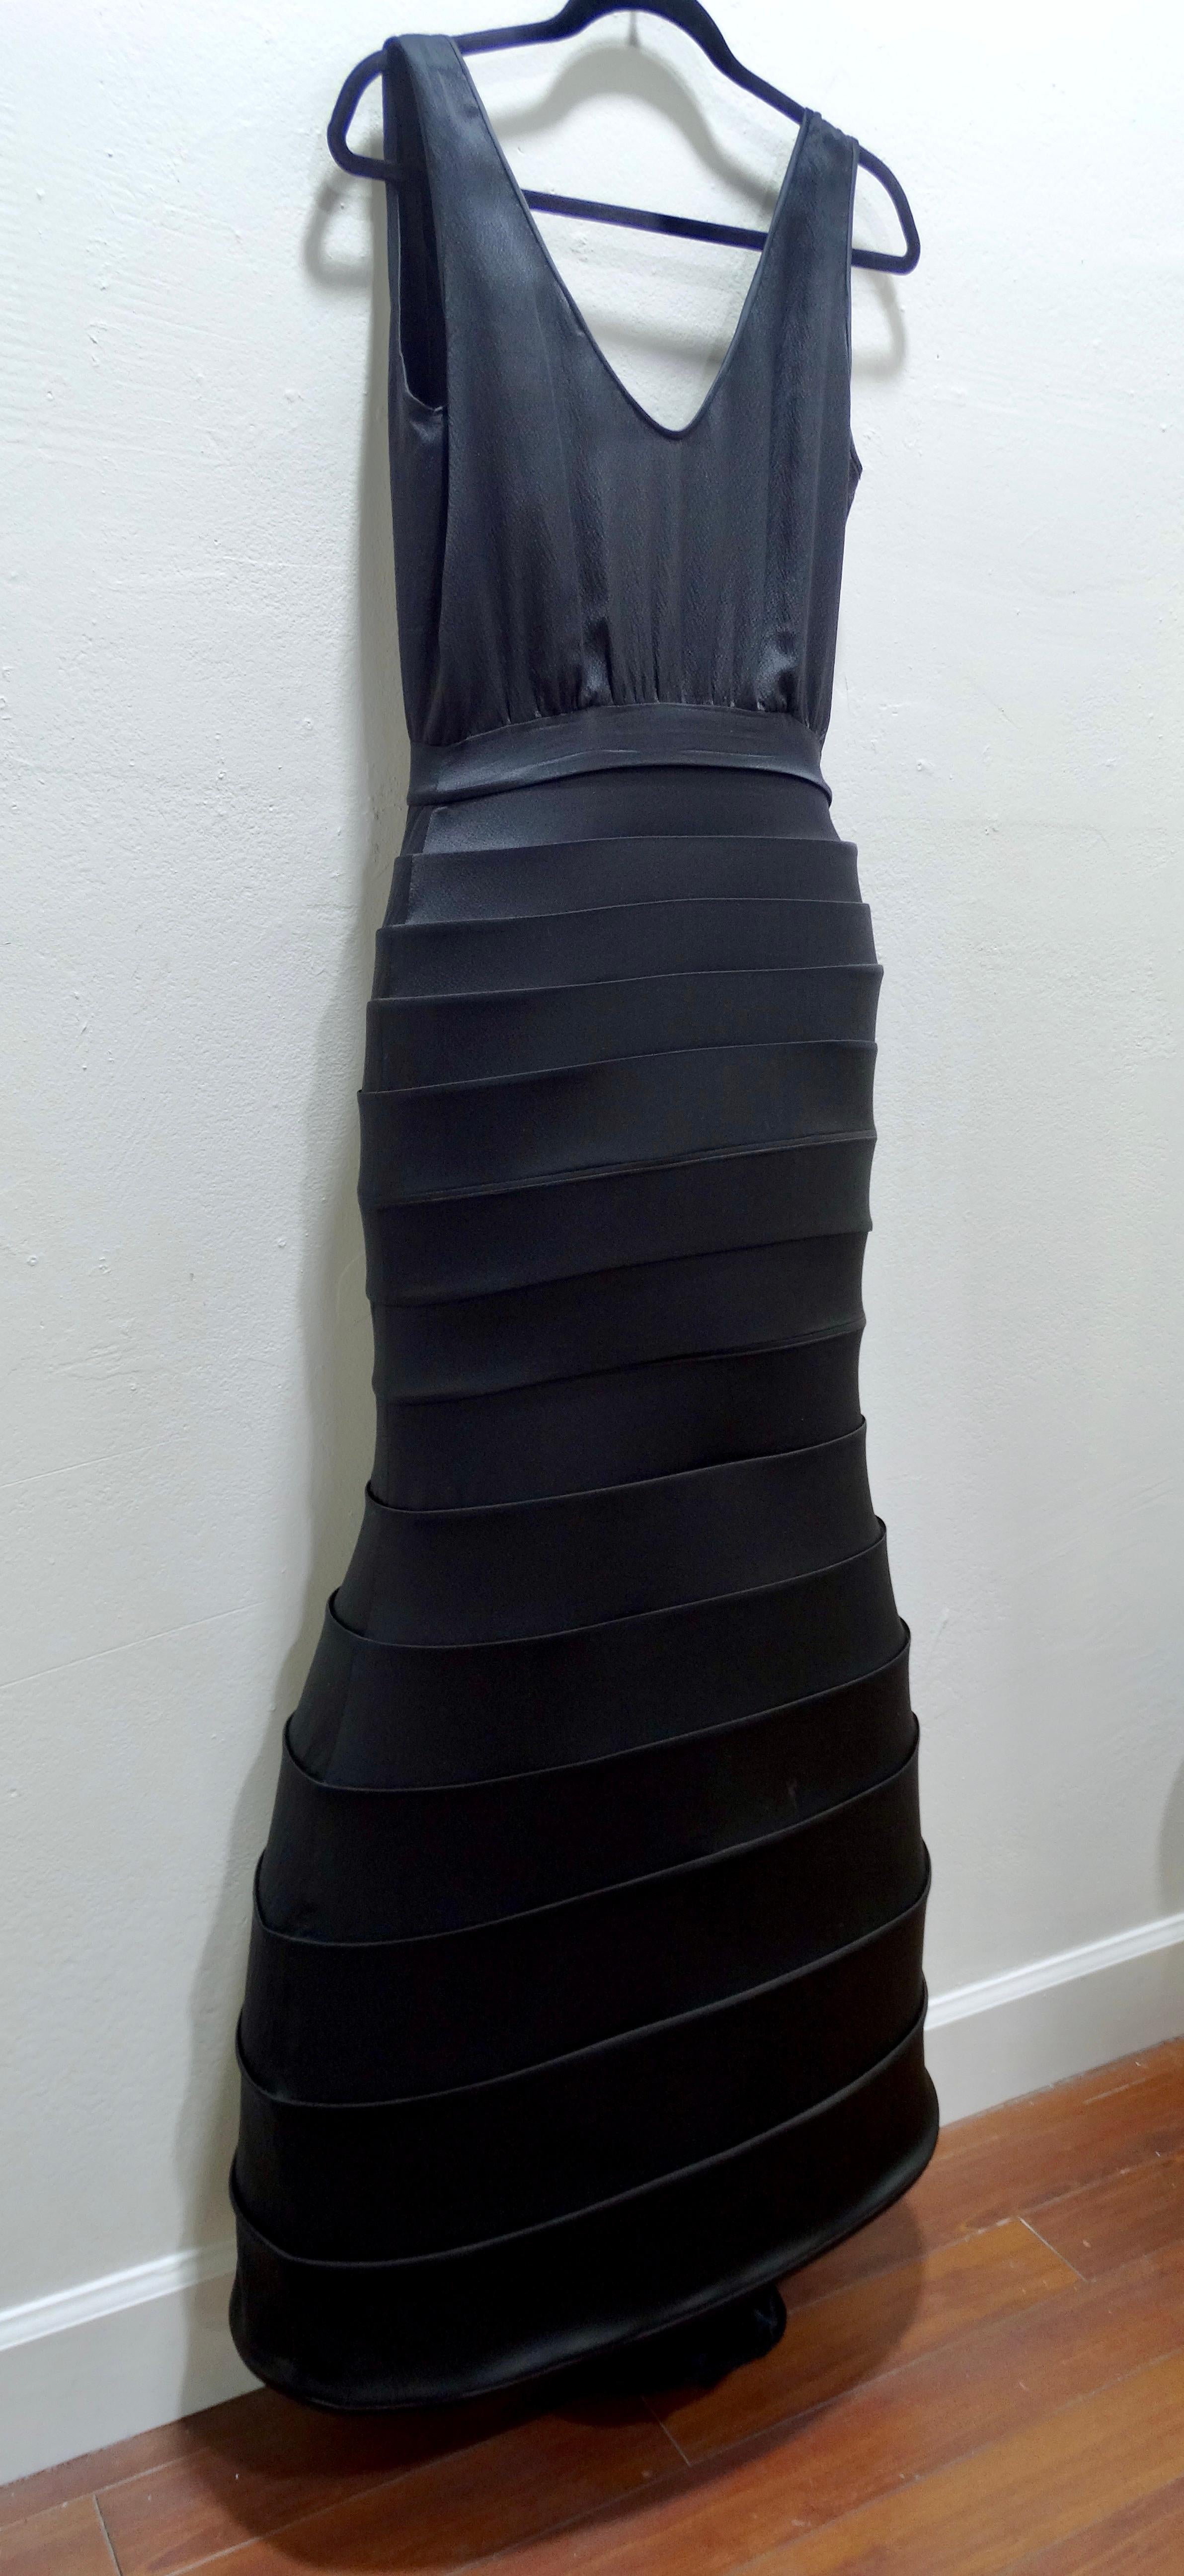 contoured dress